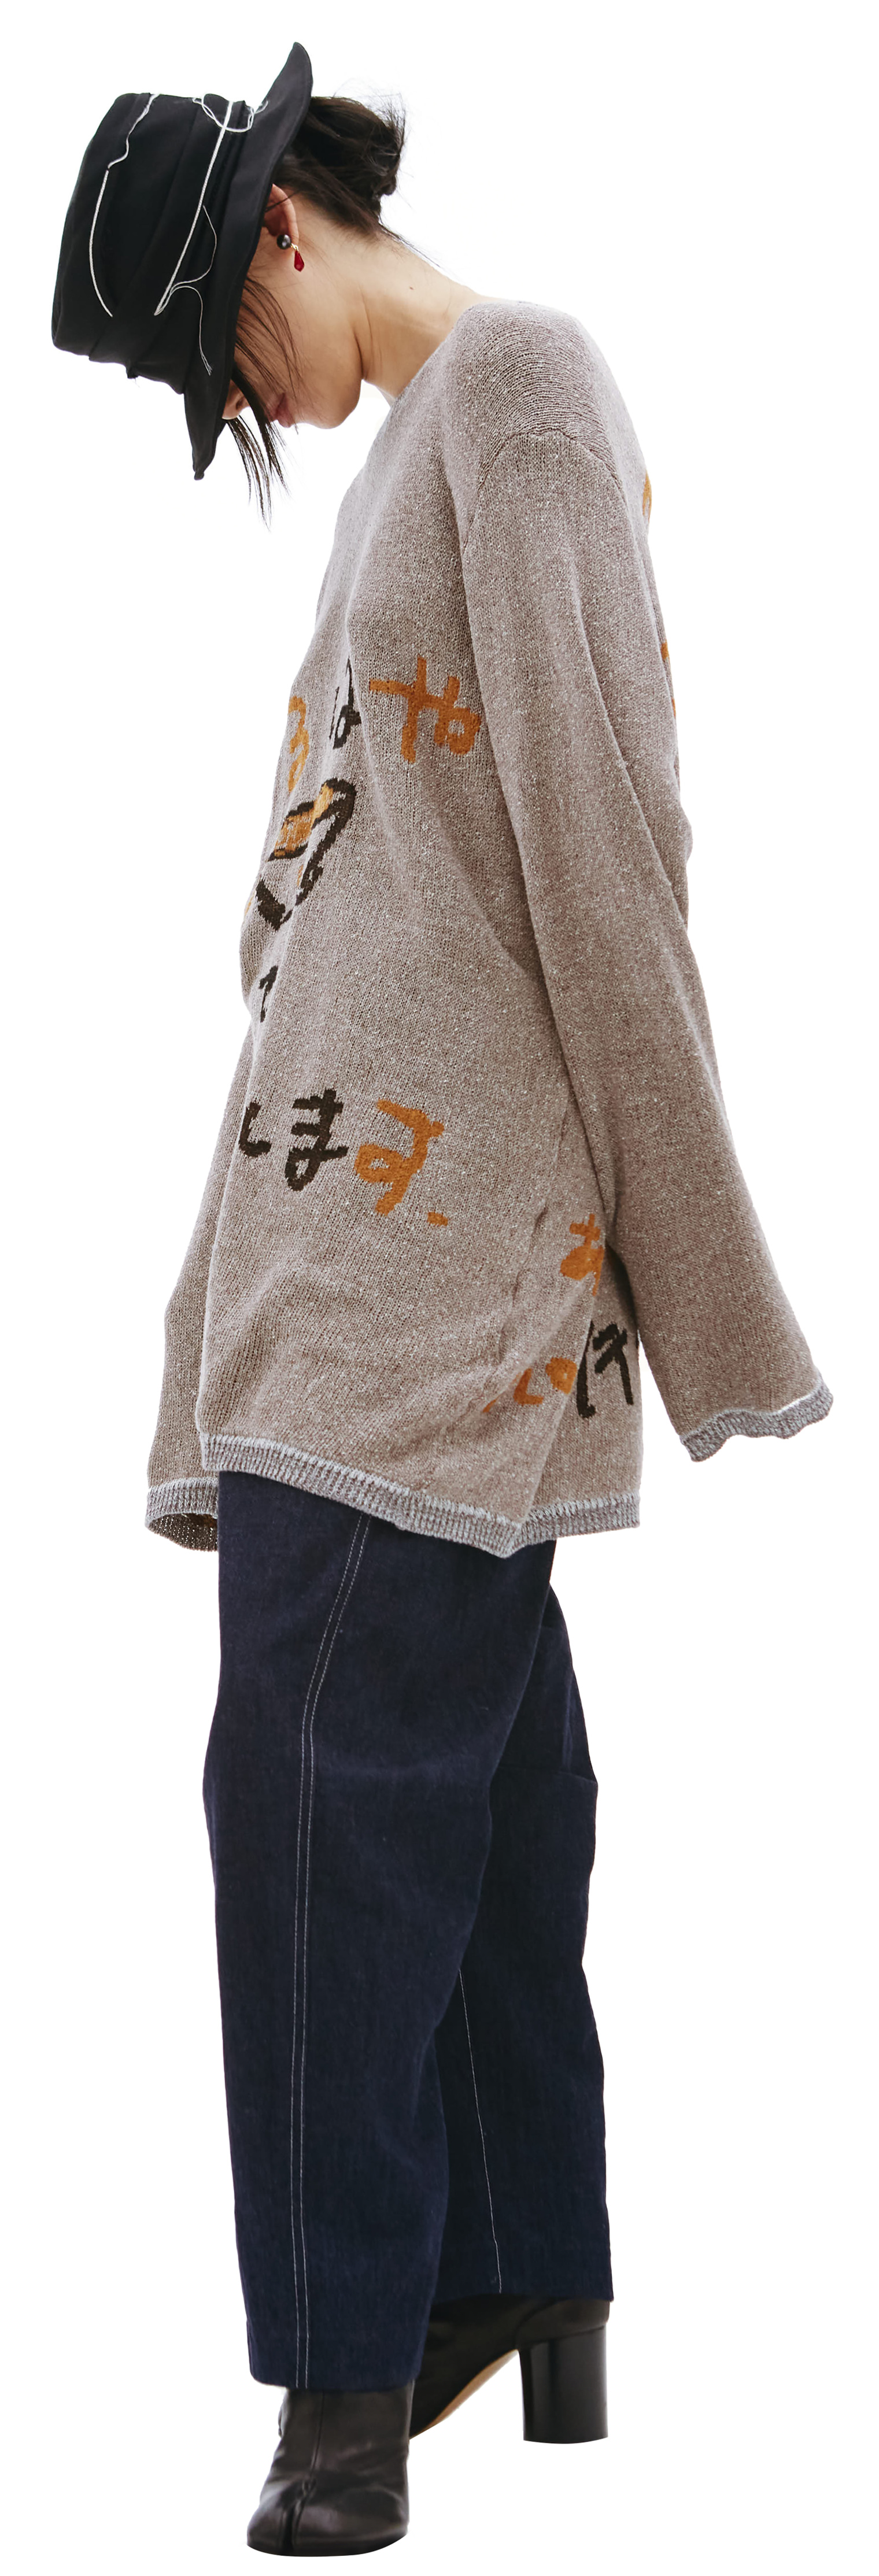 Yohji Yamamoto Asap print knit sweater